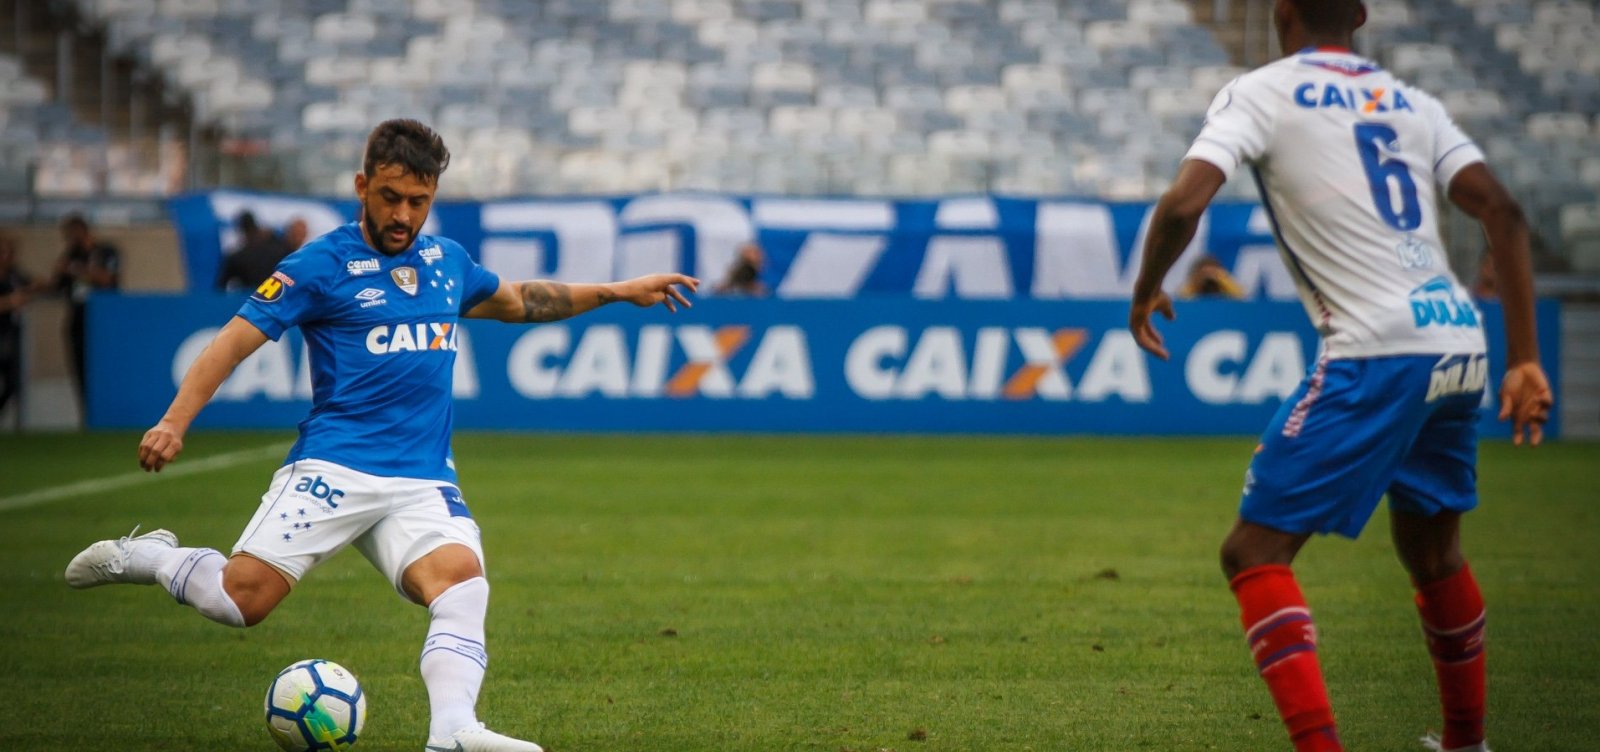 Bahia mantém invencibilidade, mas fica apenas no empate com Cruzeiro